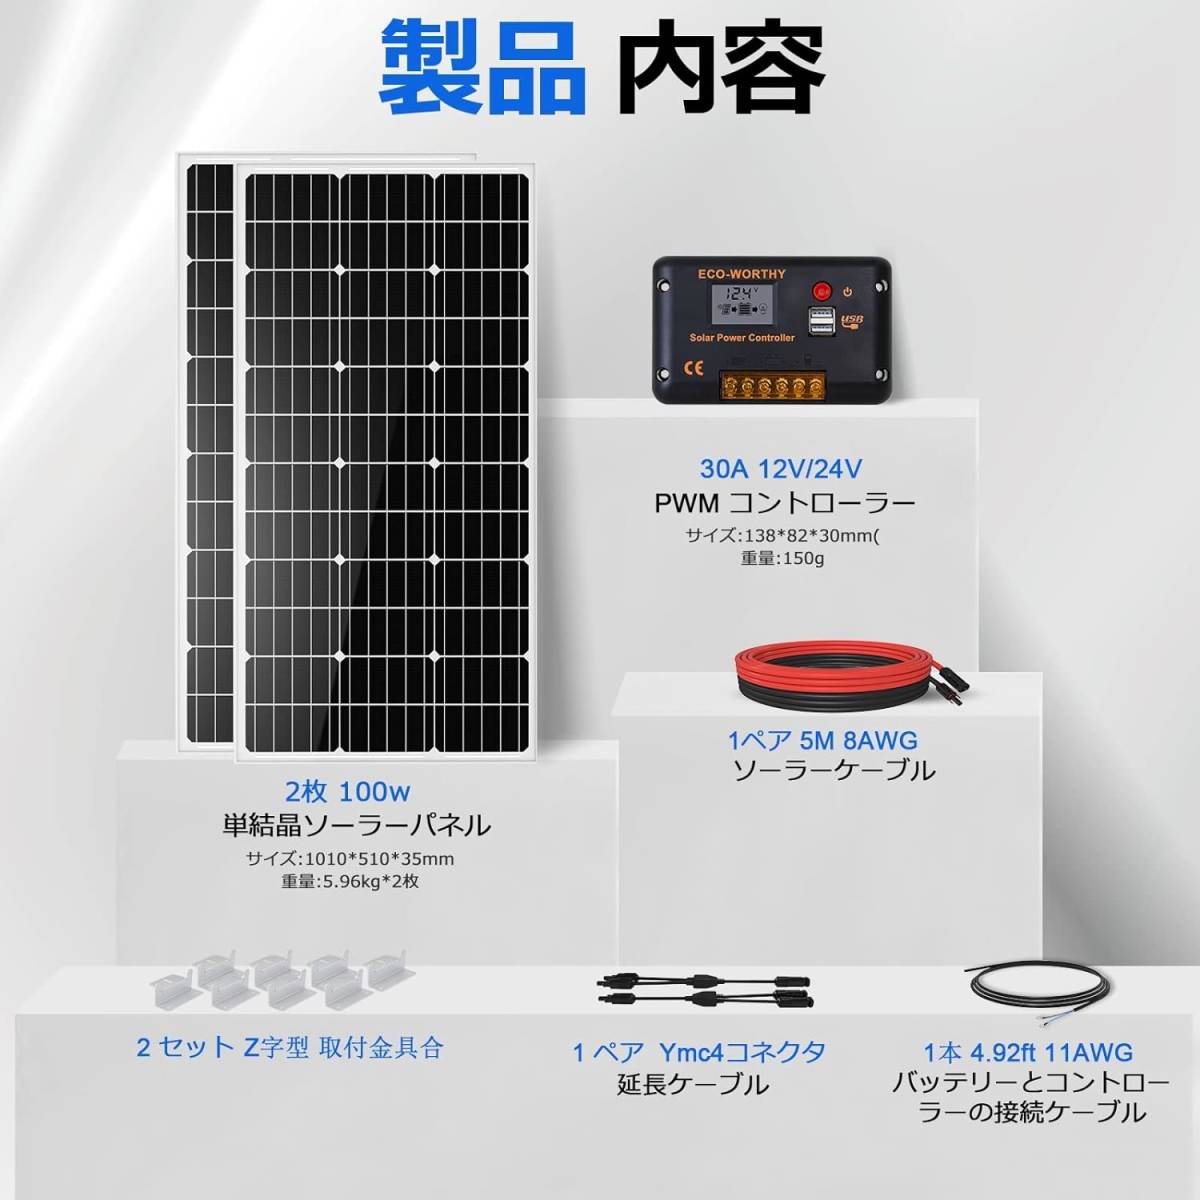 ECO-WORTHY 200W ソーラーパネル キット 100W 単結晶ソーラーパネル*2枚 + 10m ソーラーケーブル（5m赤・5m黒）+30Aチャージコントローラー_画像5